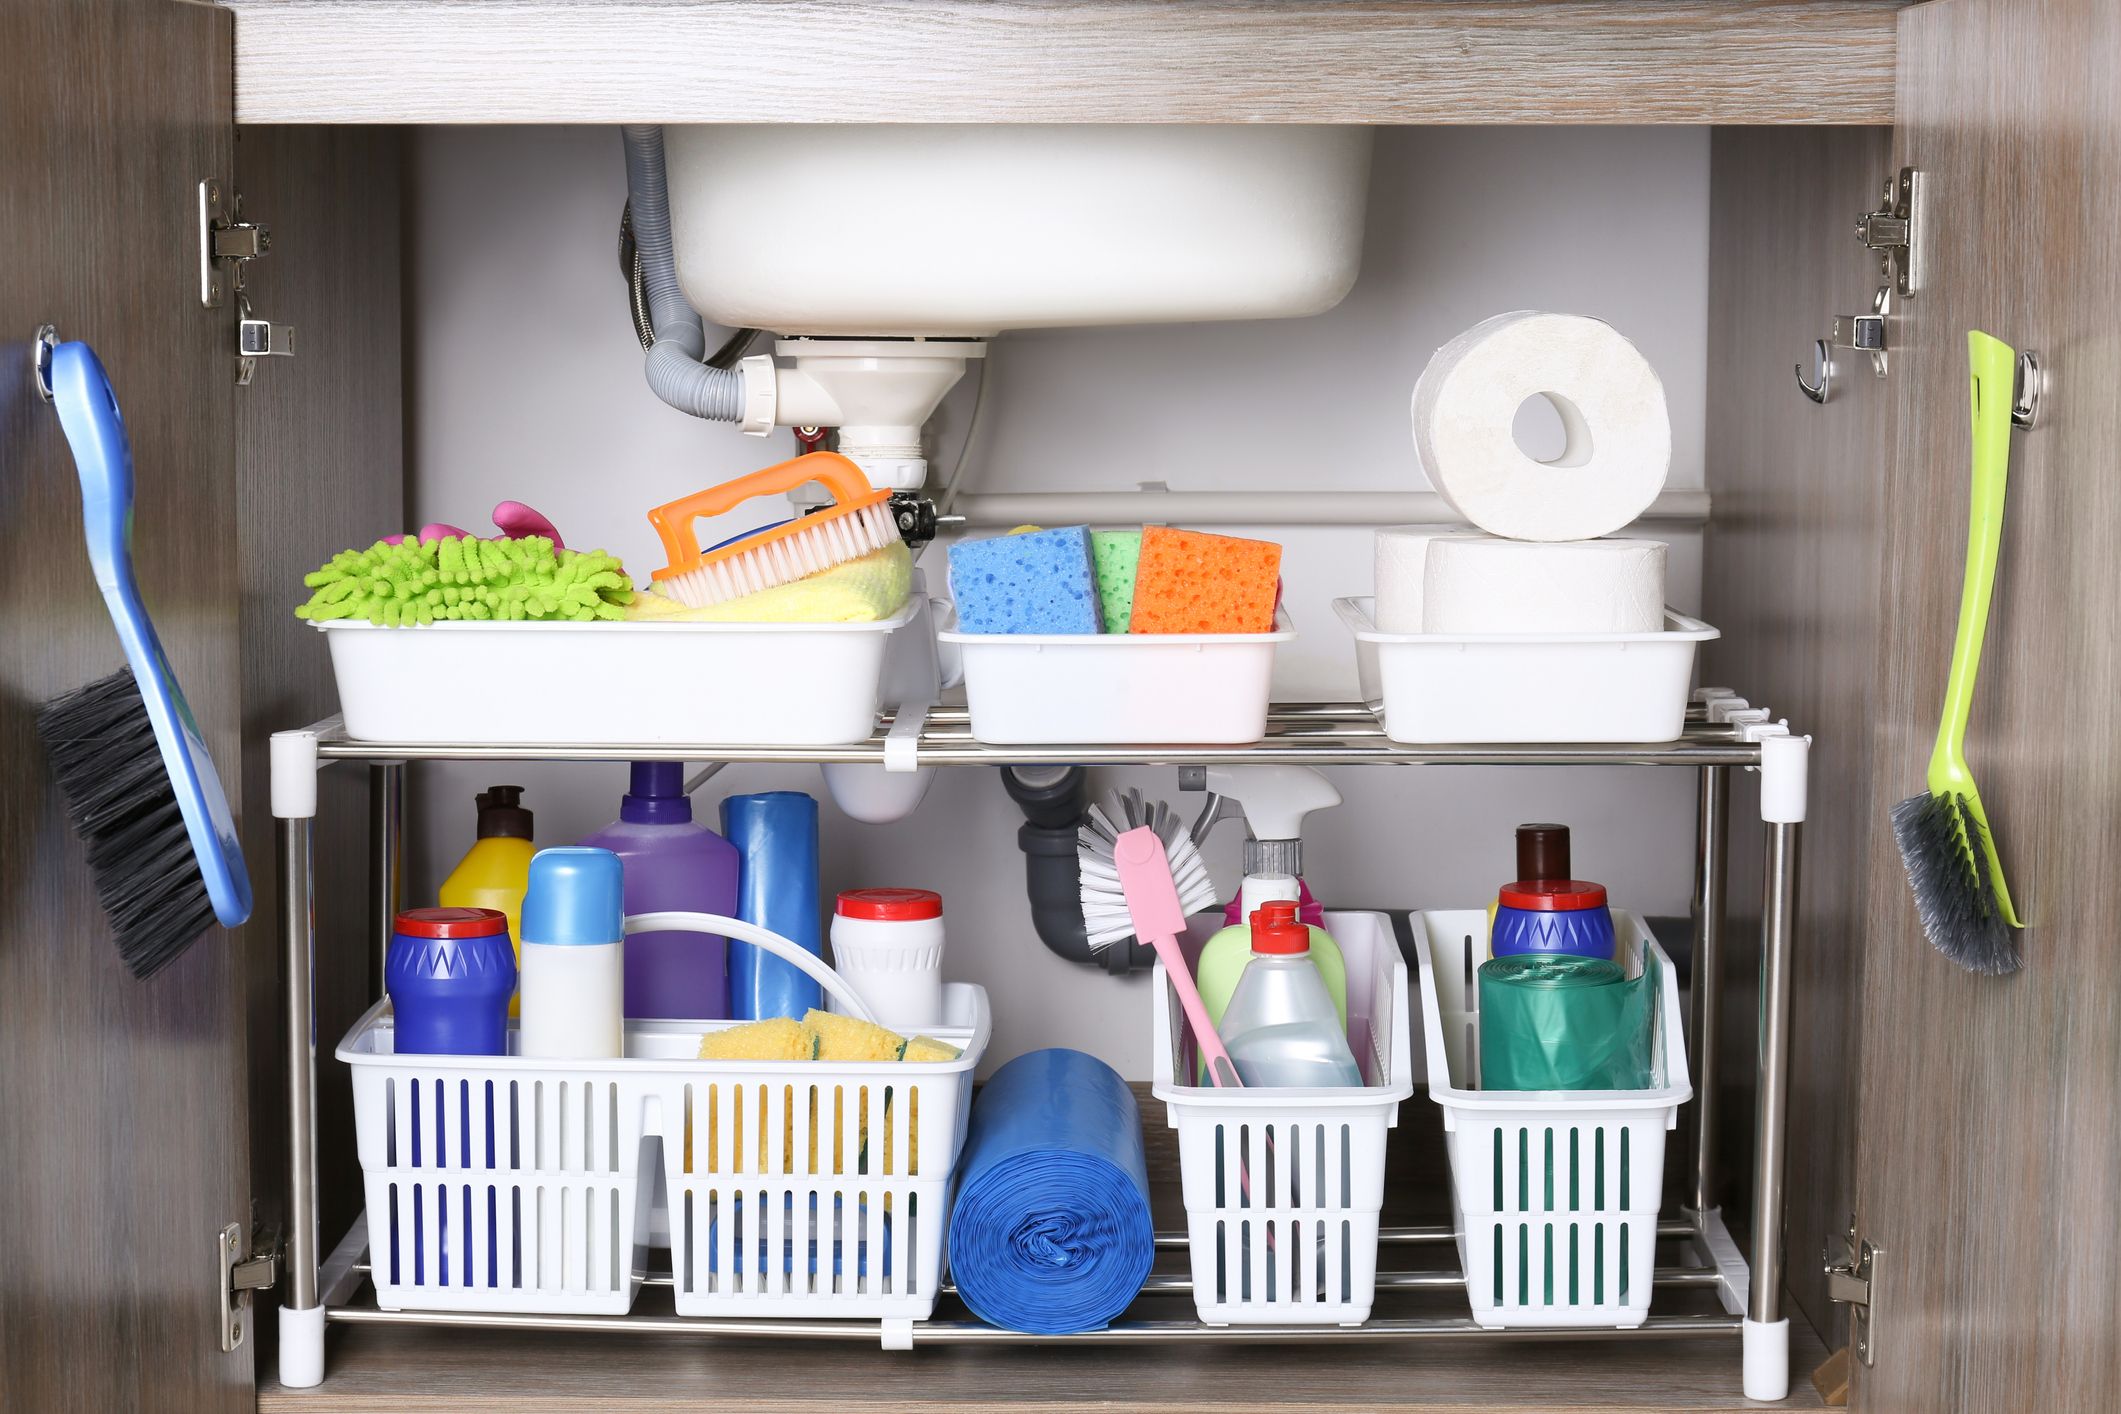 18 Genius Under-the-Sink Storage Ideas and Organizers